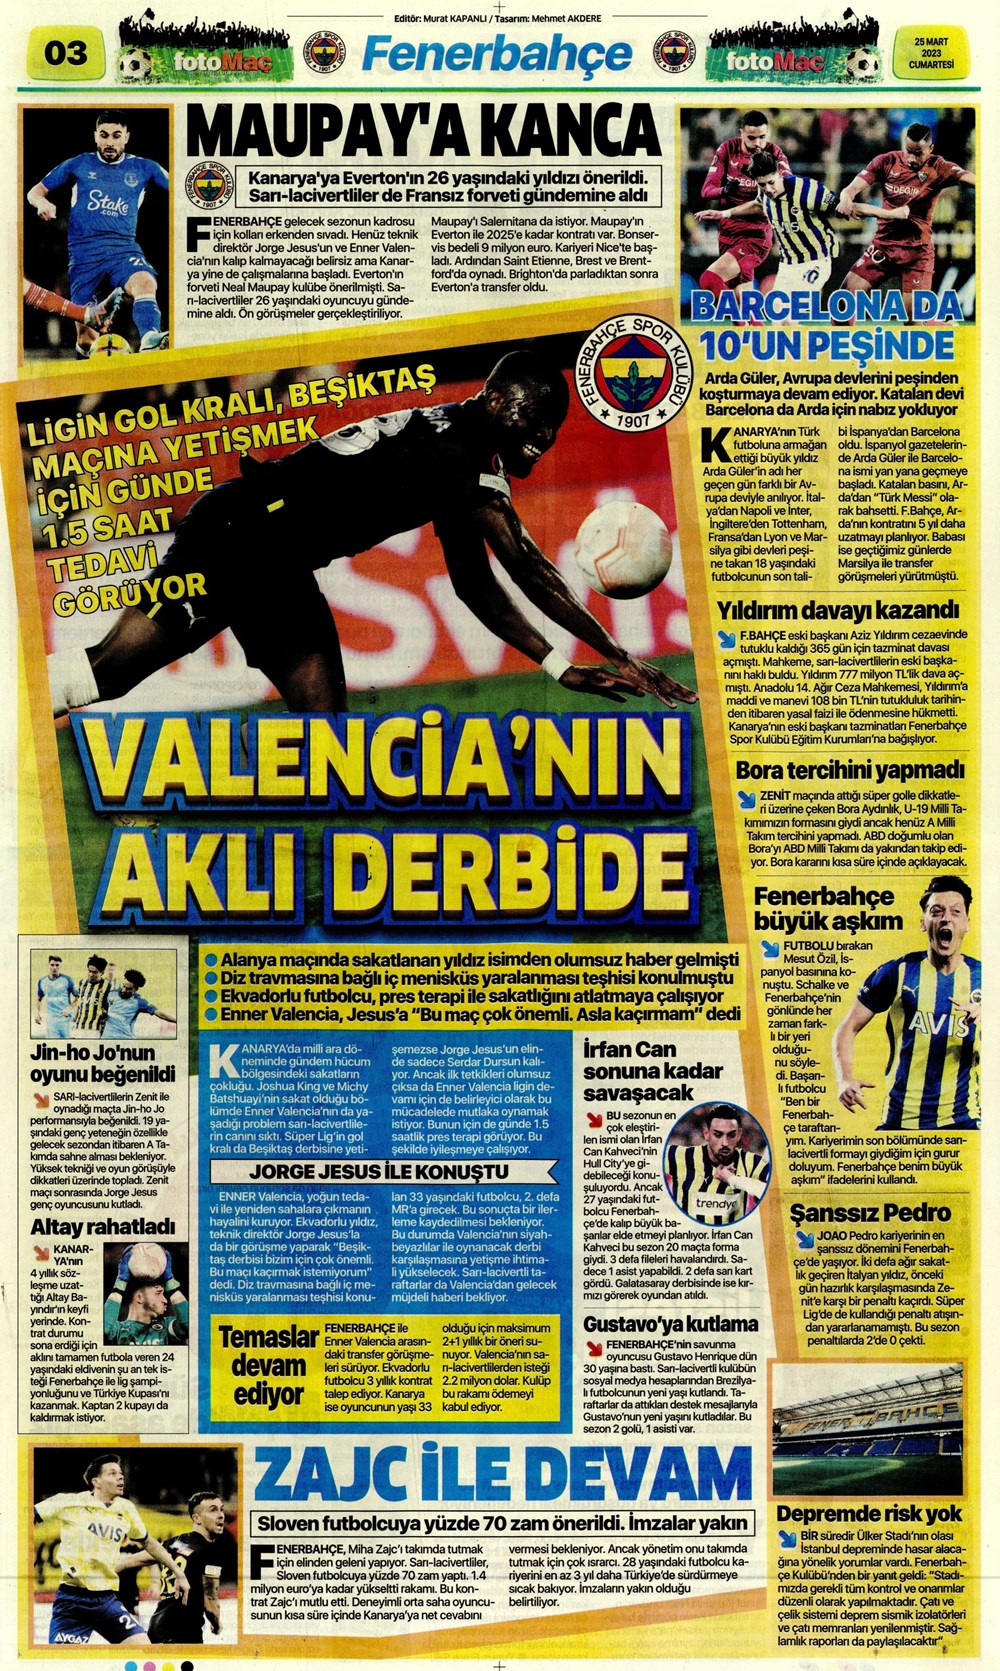 "Yeni bir başlangıç" - Sporun manşetleri - 11. Foto